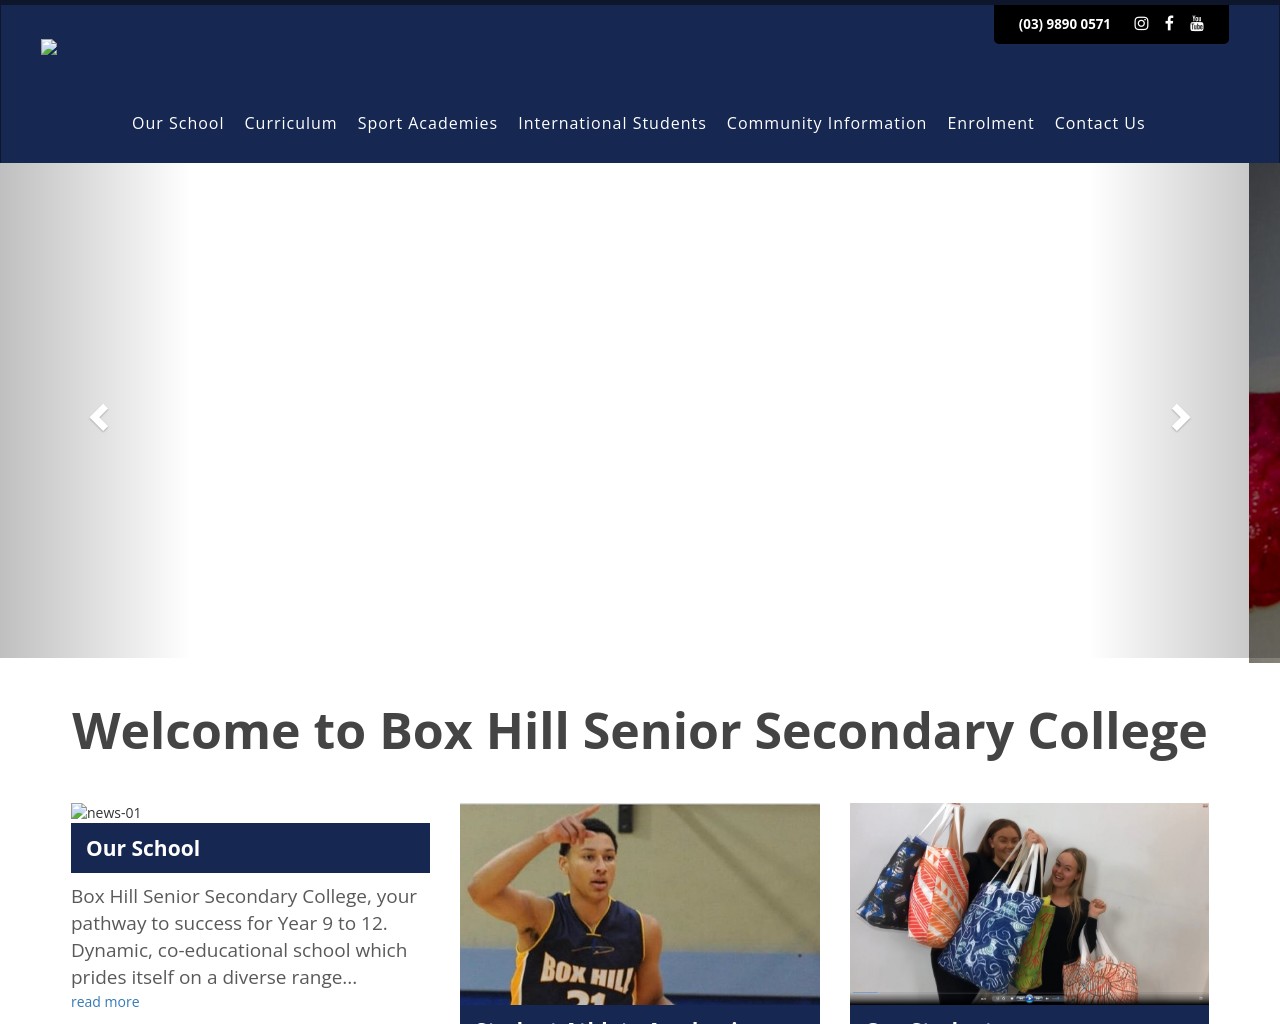 Box Hill Senior Secondary College